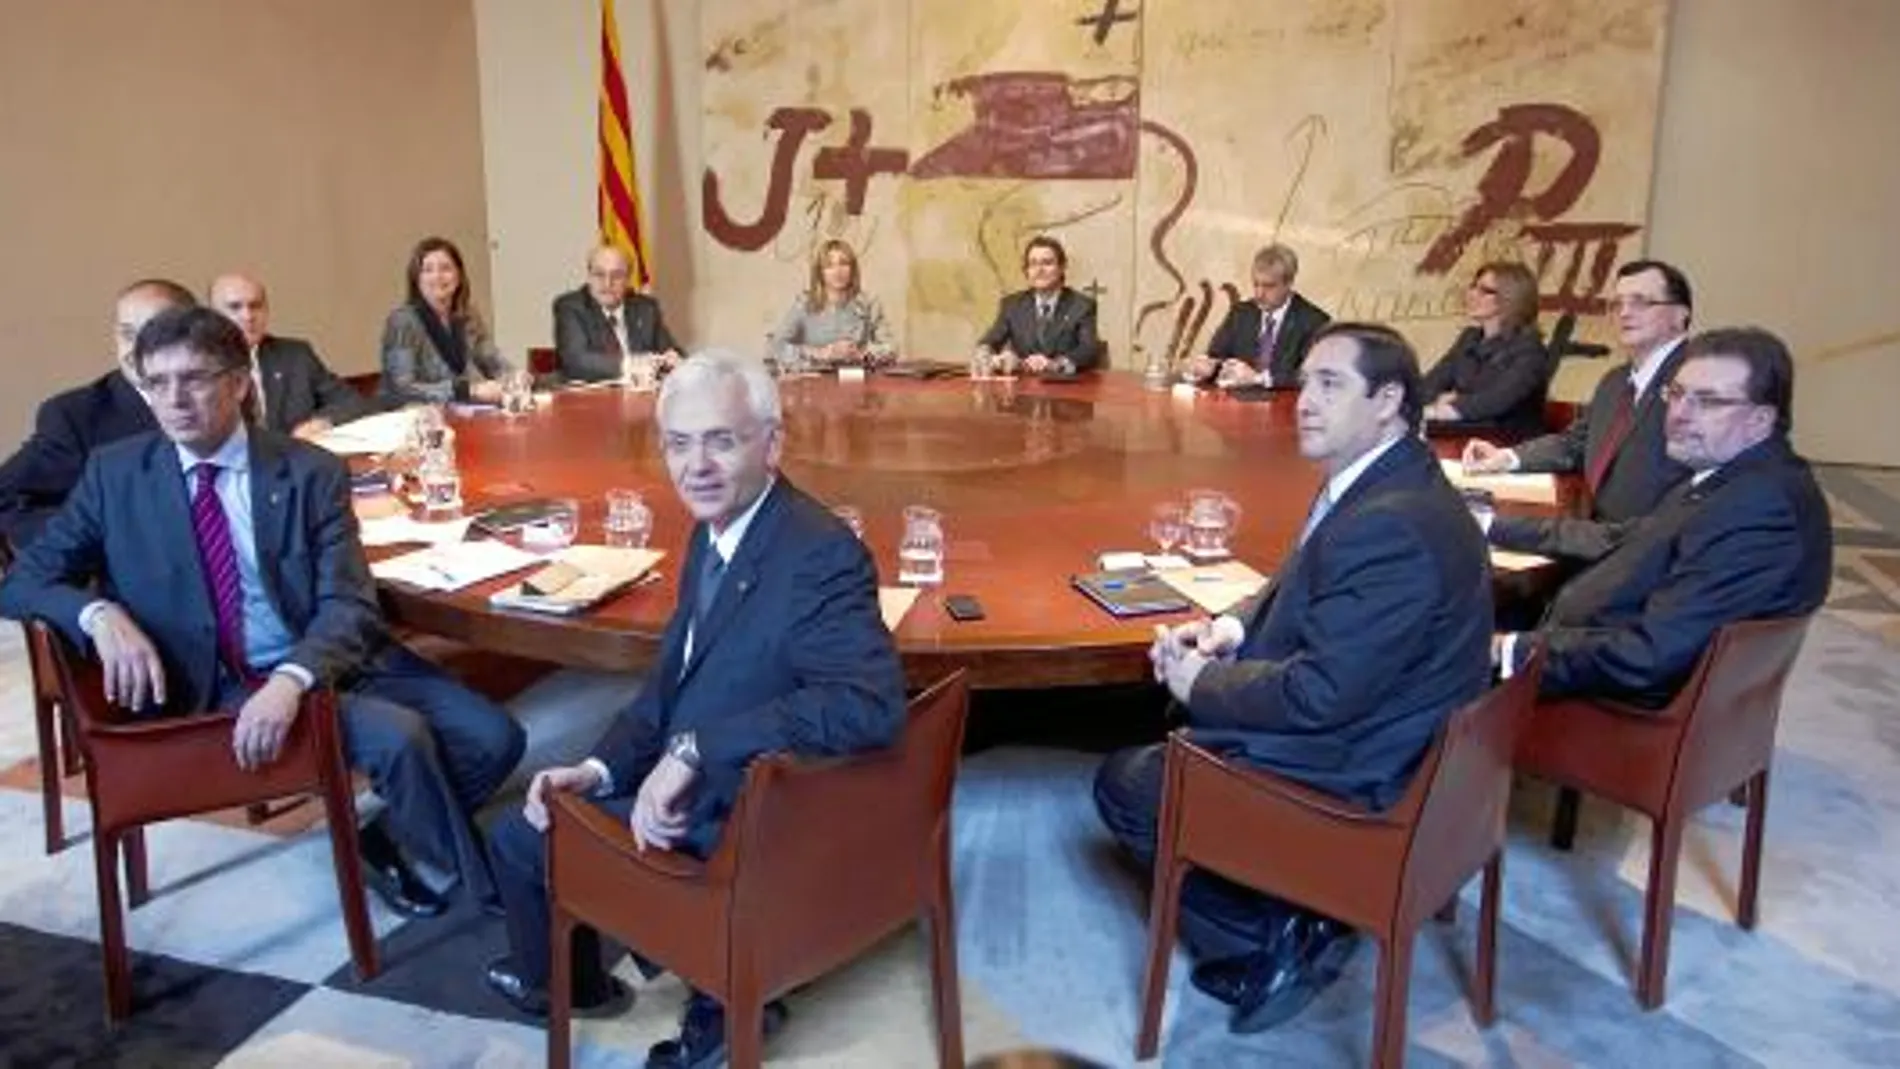 El presidente de la Generalitat, Artur Mas, y los nuevos consellers, ayer durante la primera reunión del ejecutivo catalán